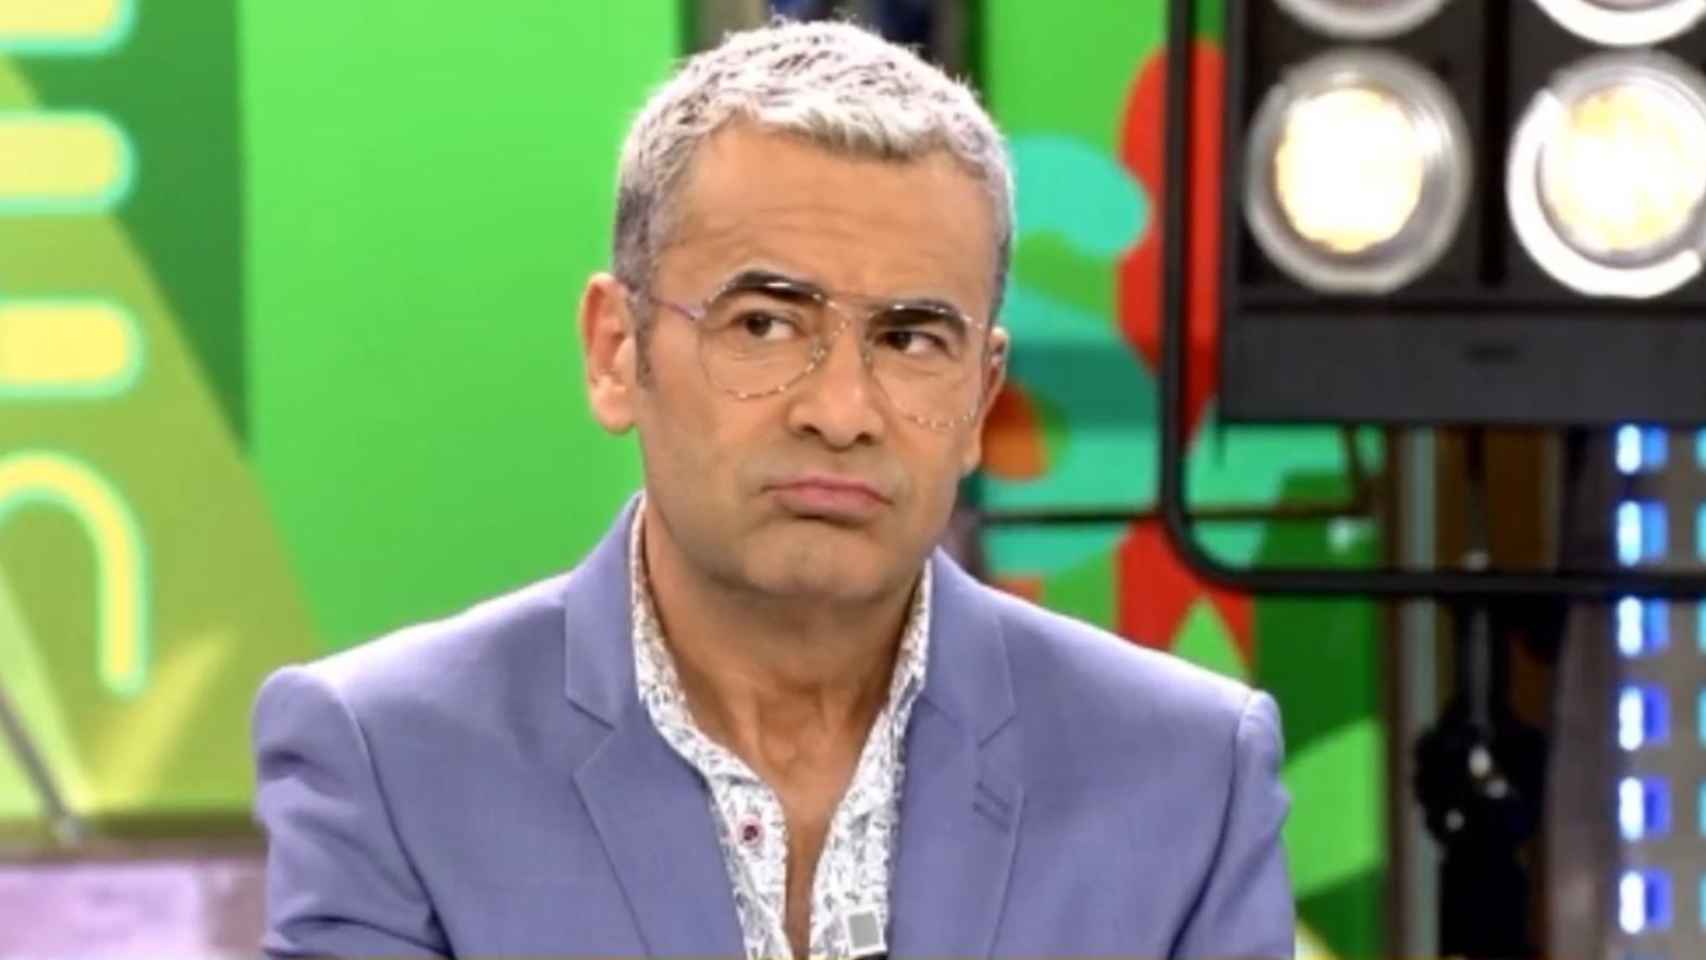 El presentador Jorge Javier Vázquez / MEDIASET